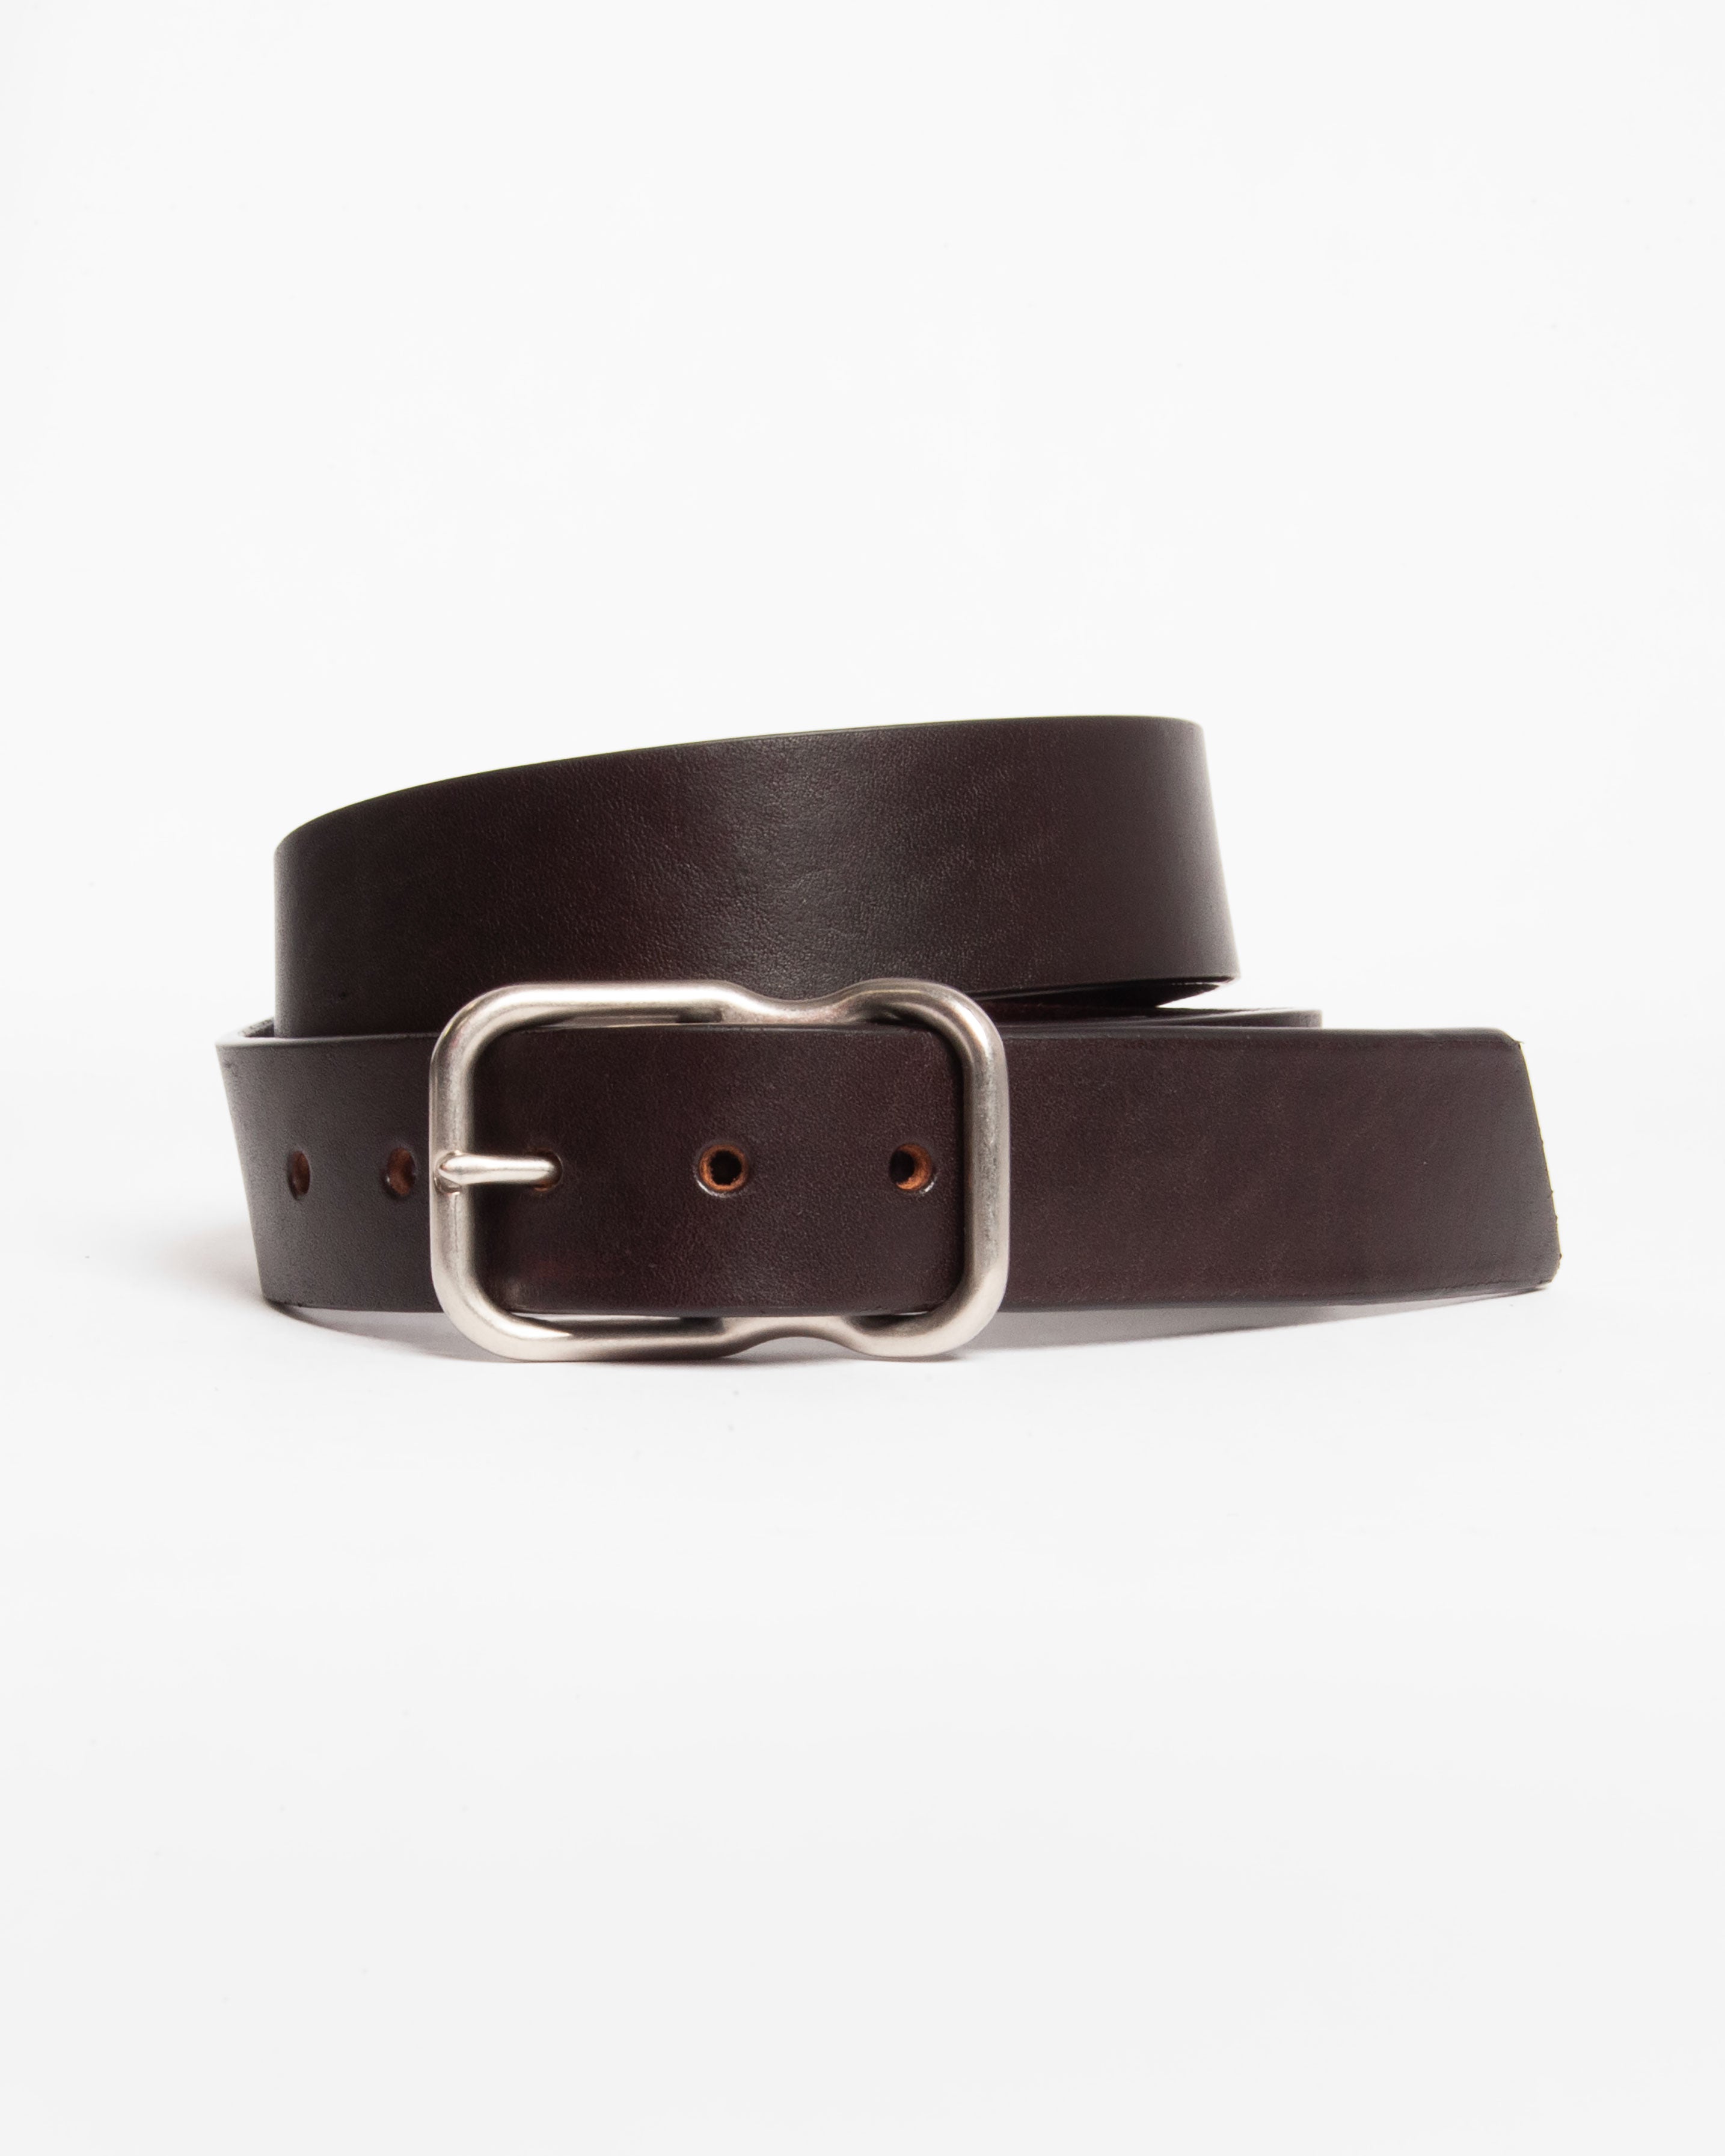 112 Signature Leather Belt - Dark Brown - Nickel